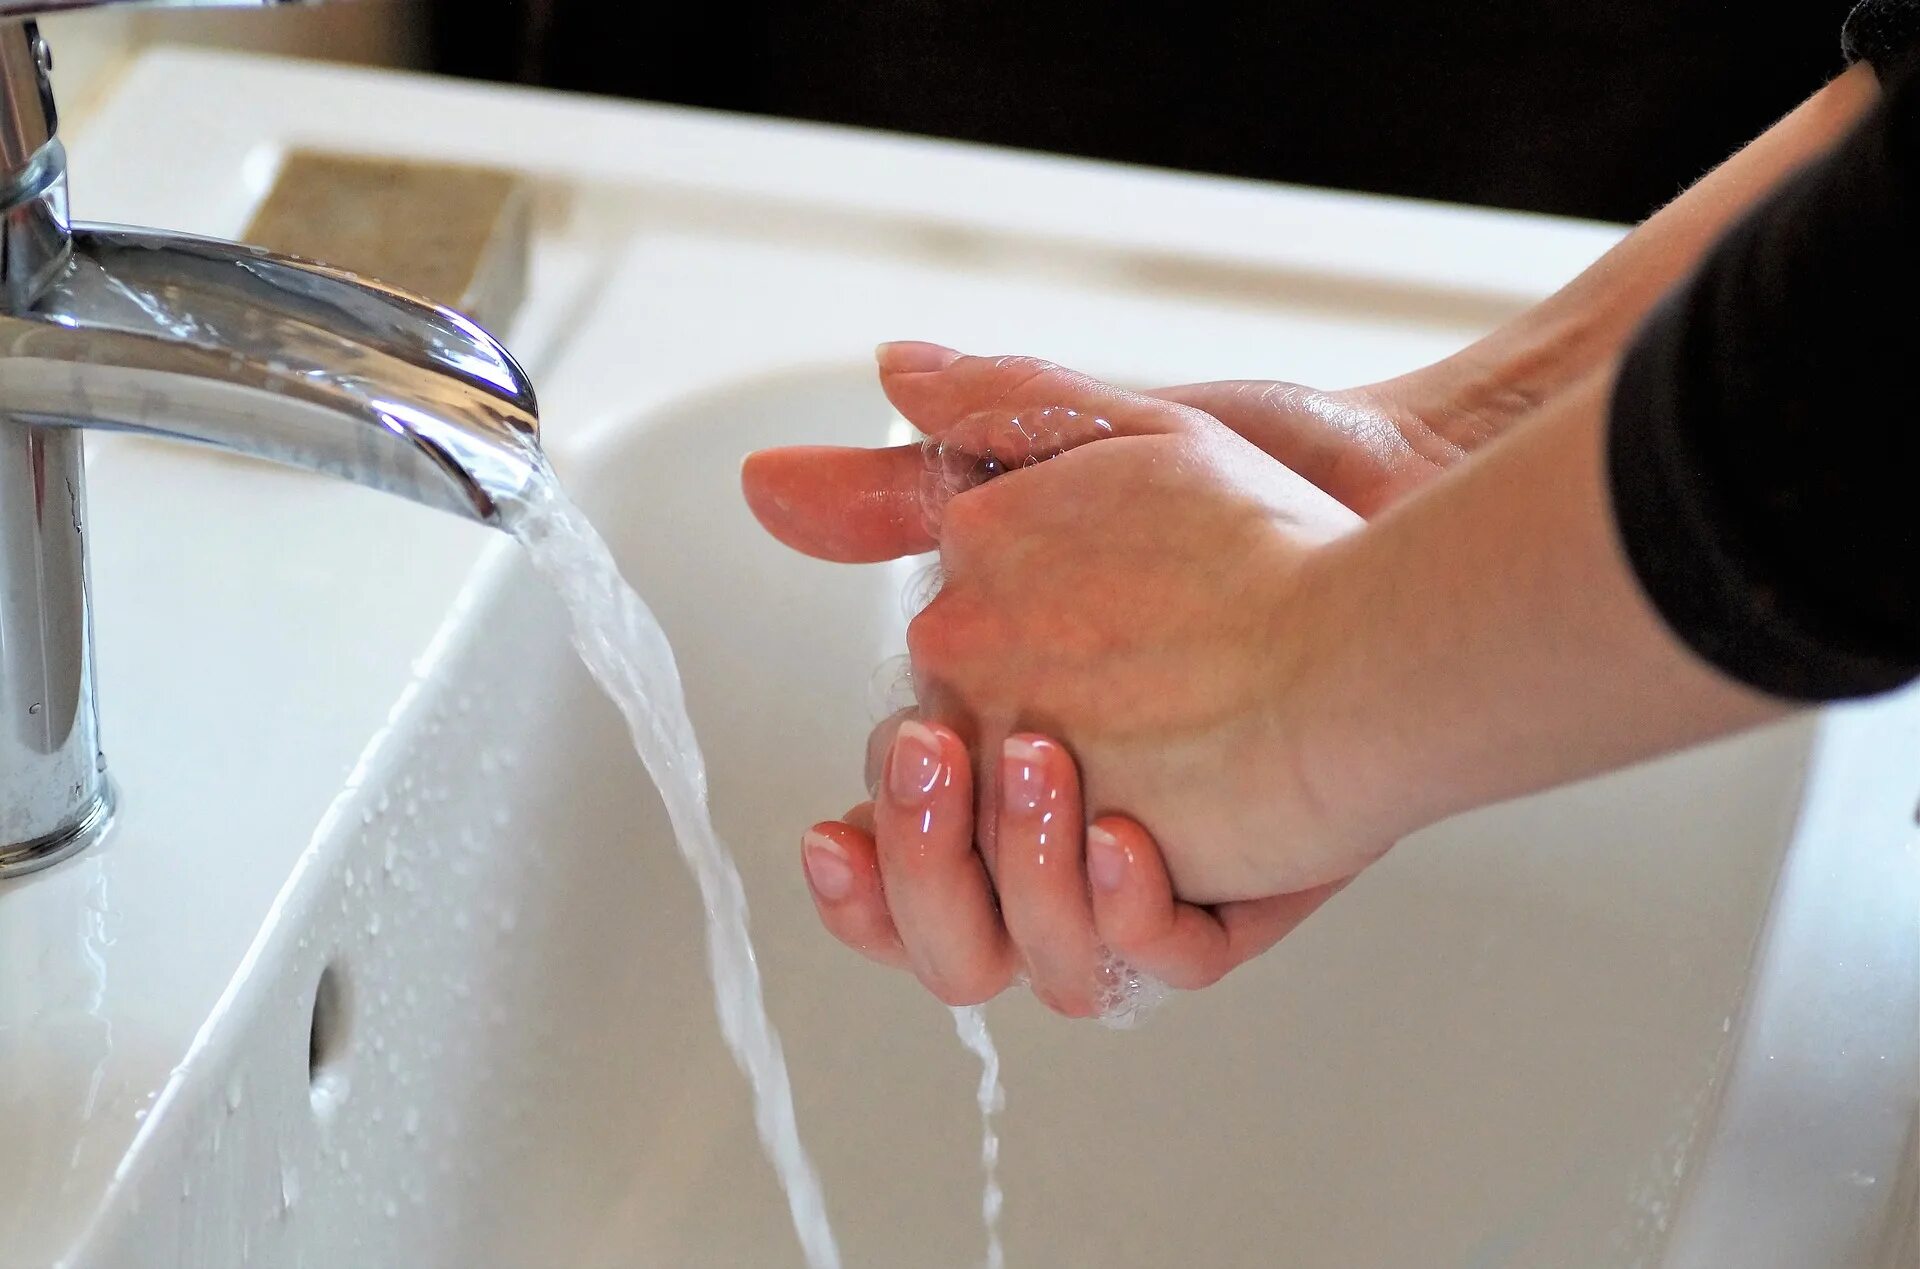 Мытье рук. Мыть руки. Мытье рук с мылом и водой применяется для. Женщина моет руки. Мытье жесткой водой